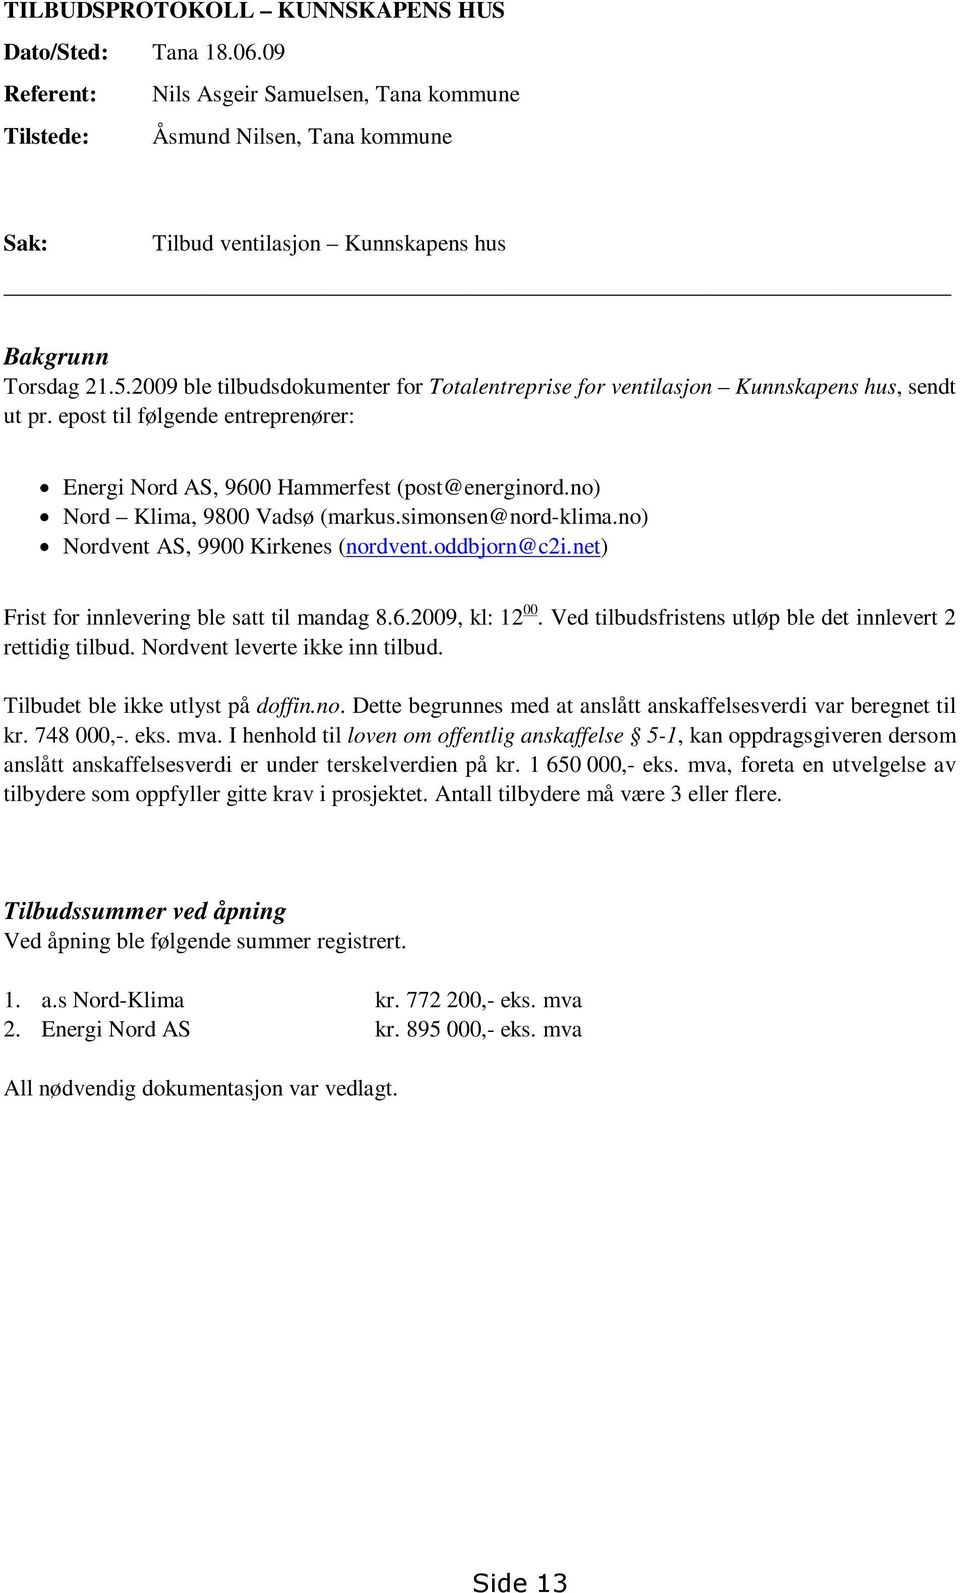 2009 ble tilbudsdokumenter for Totalentreprise for ventilasjon Kunnskapens hus, sendt ut pr. epost til følgende entreprenører: Energi Nord AS, 9600 Hammerfest (post@energinord.